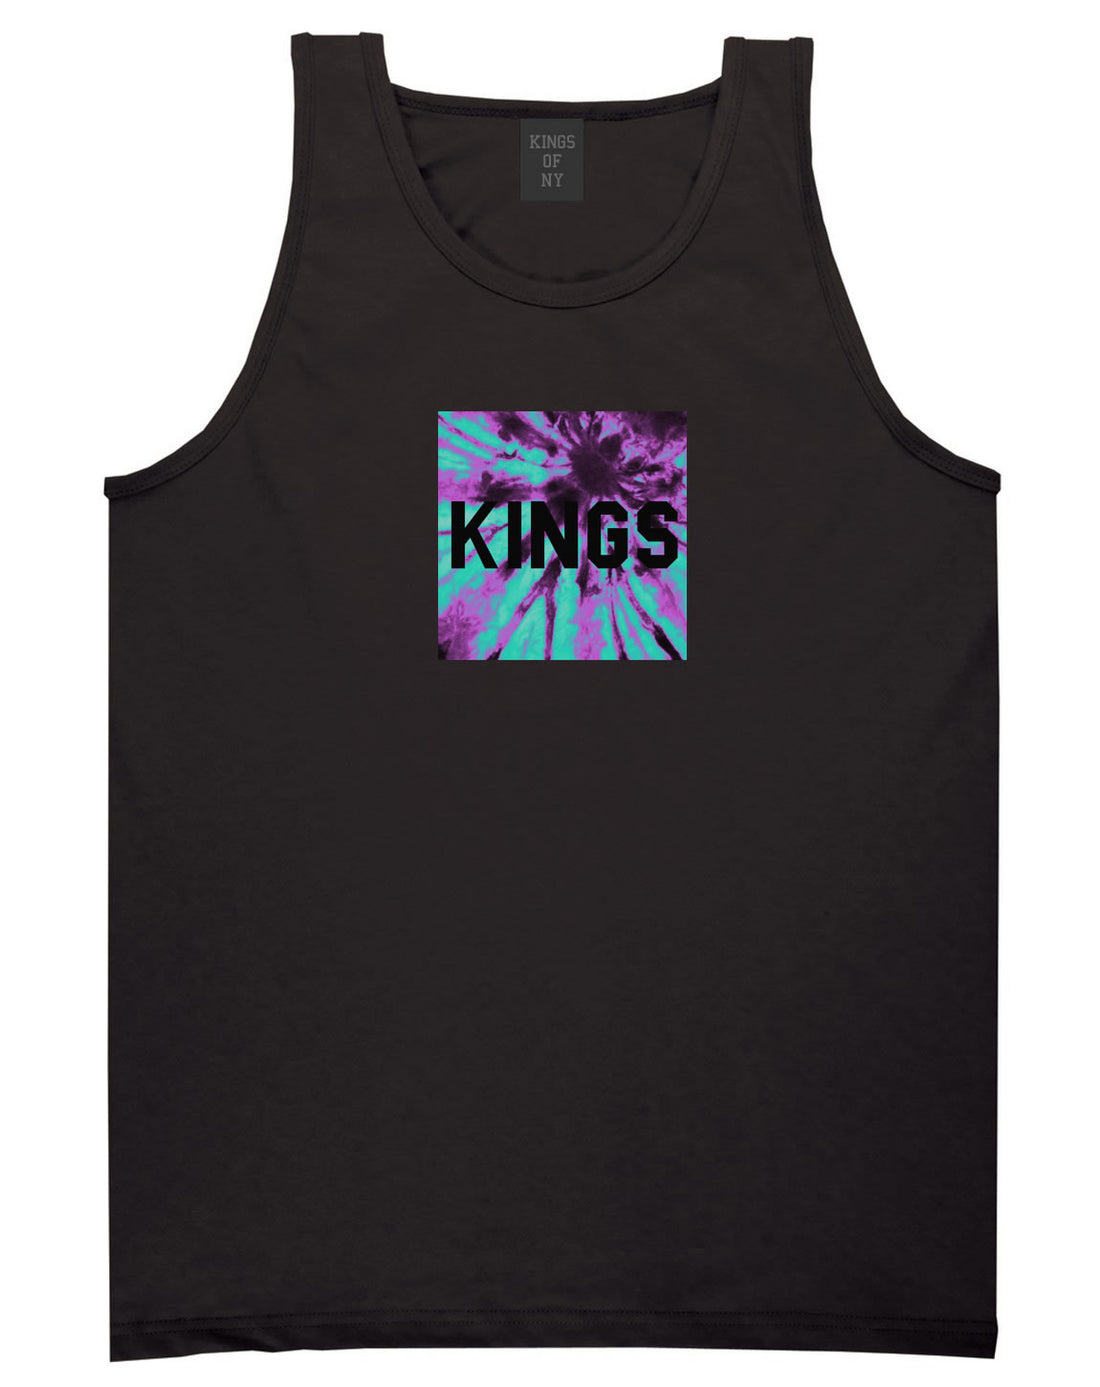 Kings Blue Tie Dye Box Logo Tank Top in Black By Kings Of NY